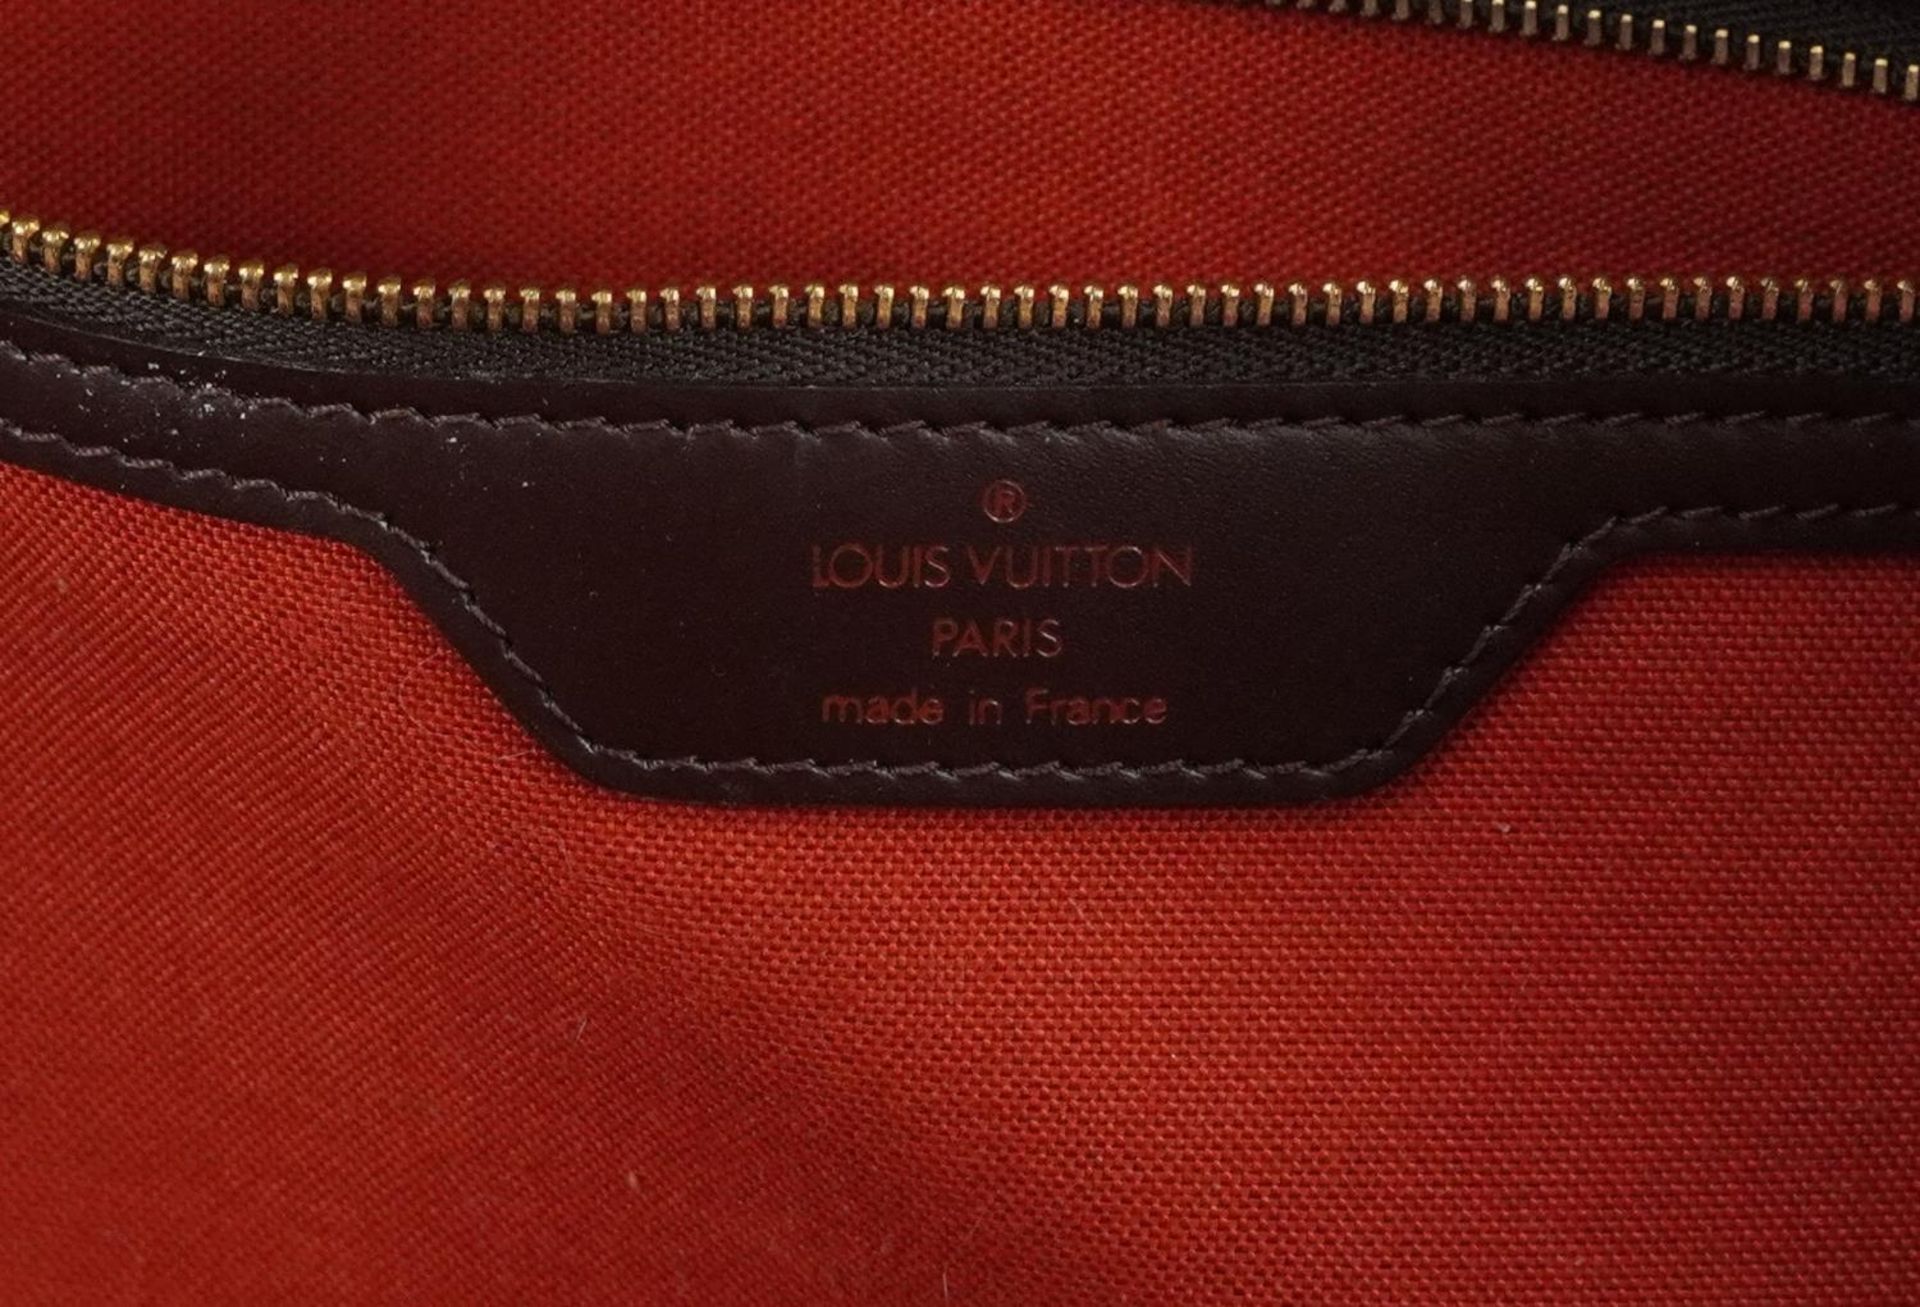 Louis Vuitton Damier Ebene Nolita satchel bag with two canvas straps, date code SP0939, 32cm x 44. - Image 4 of 7